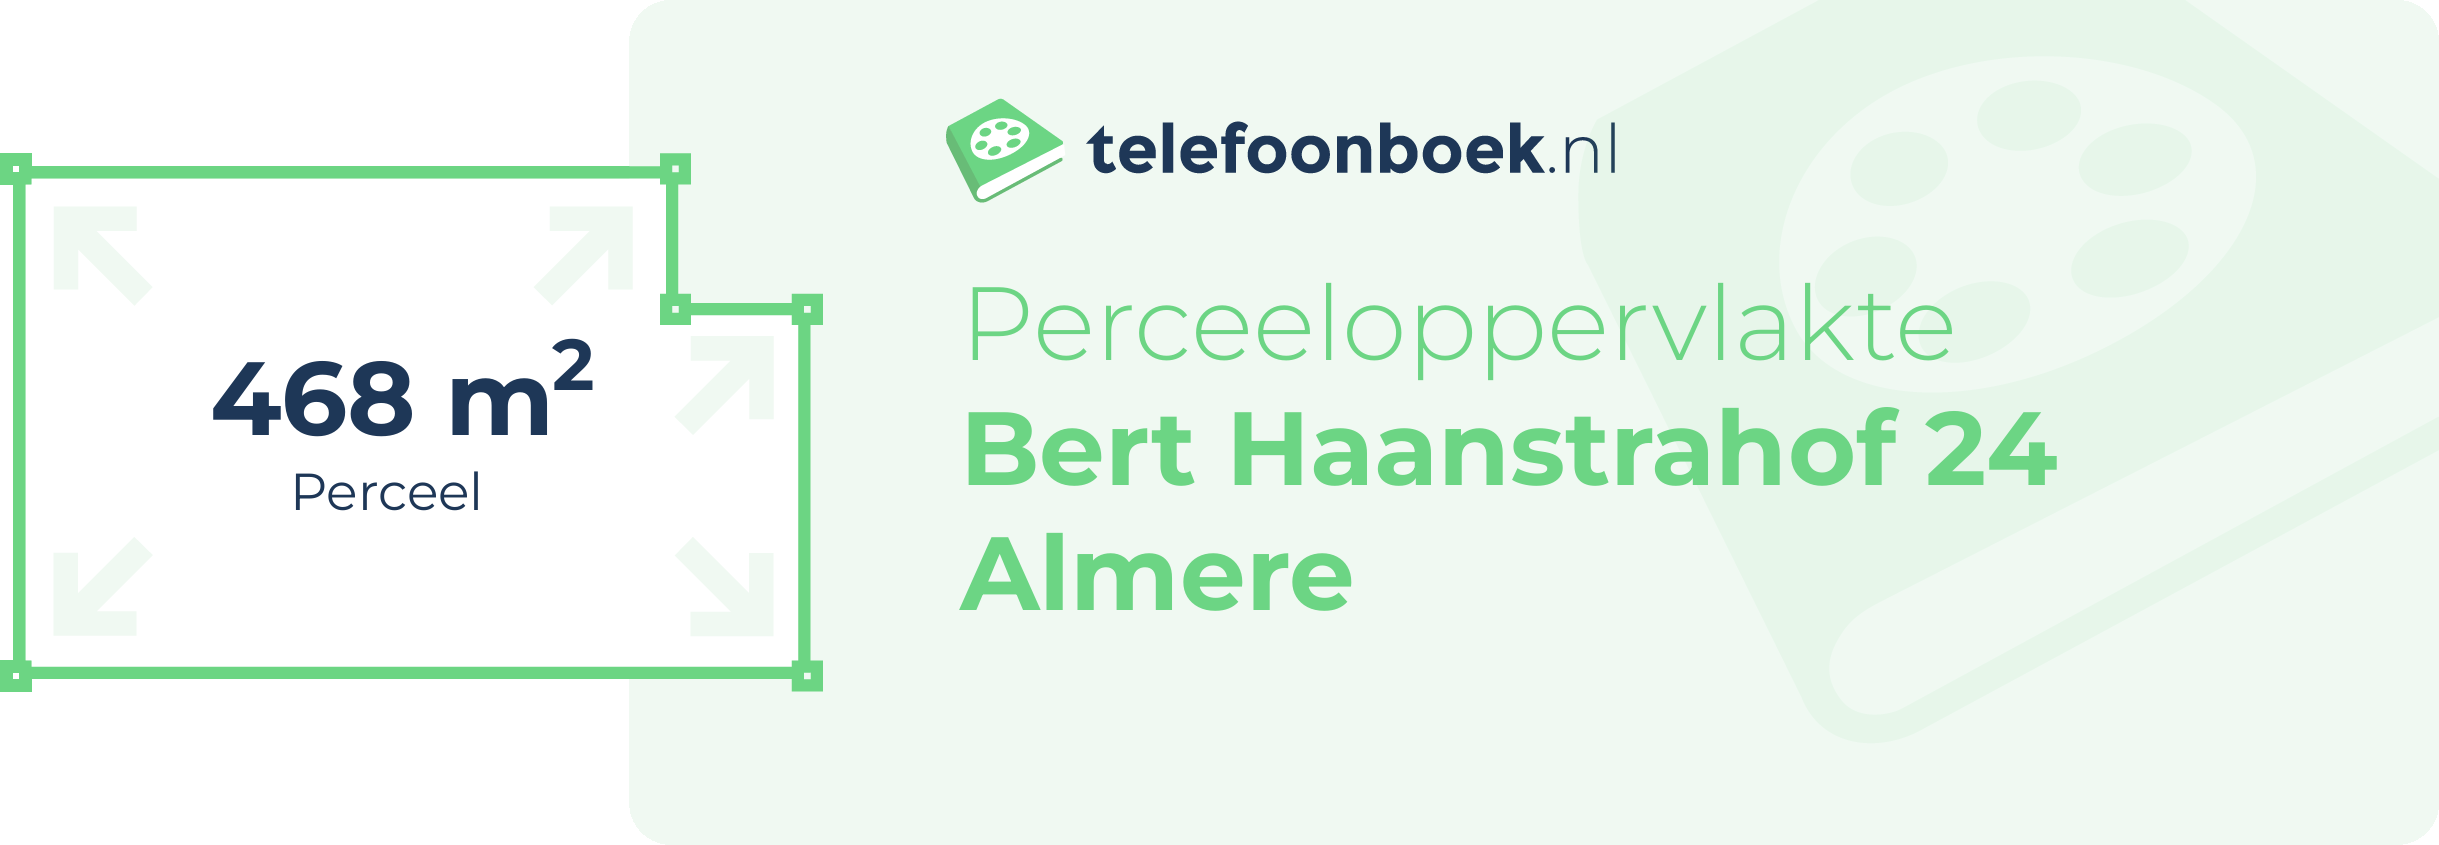 Perceeloppervlakte Bert Haanstrahof 24 Almere